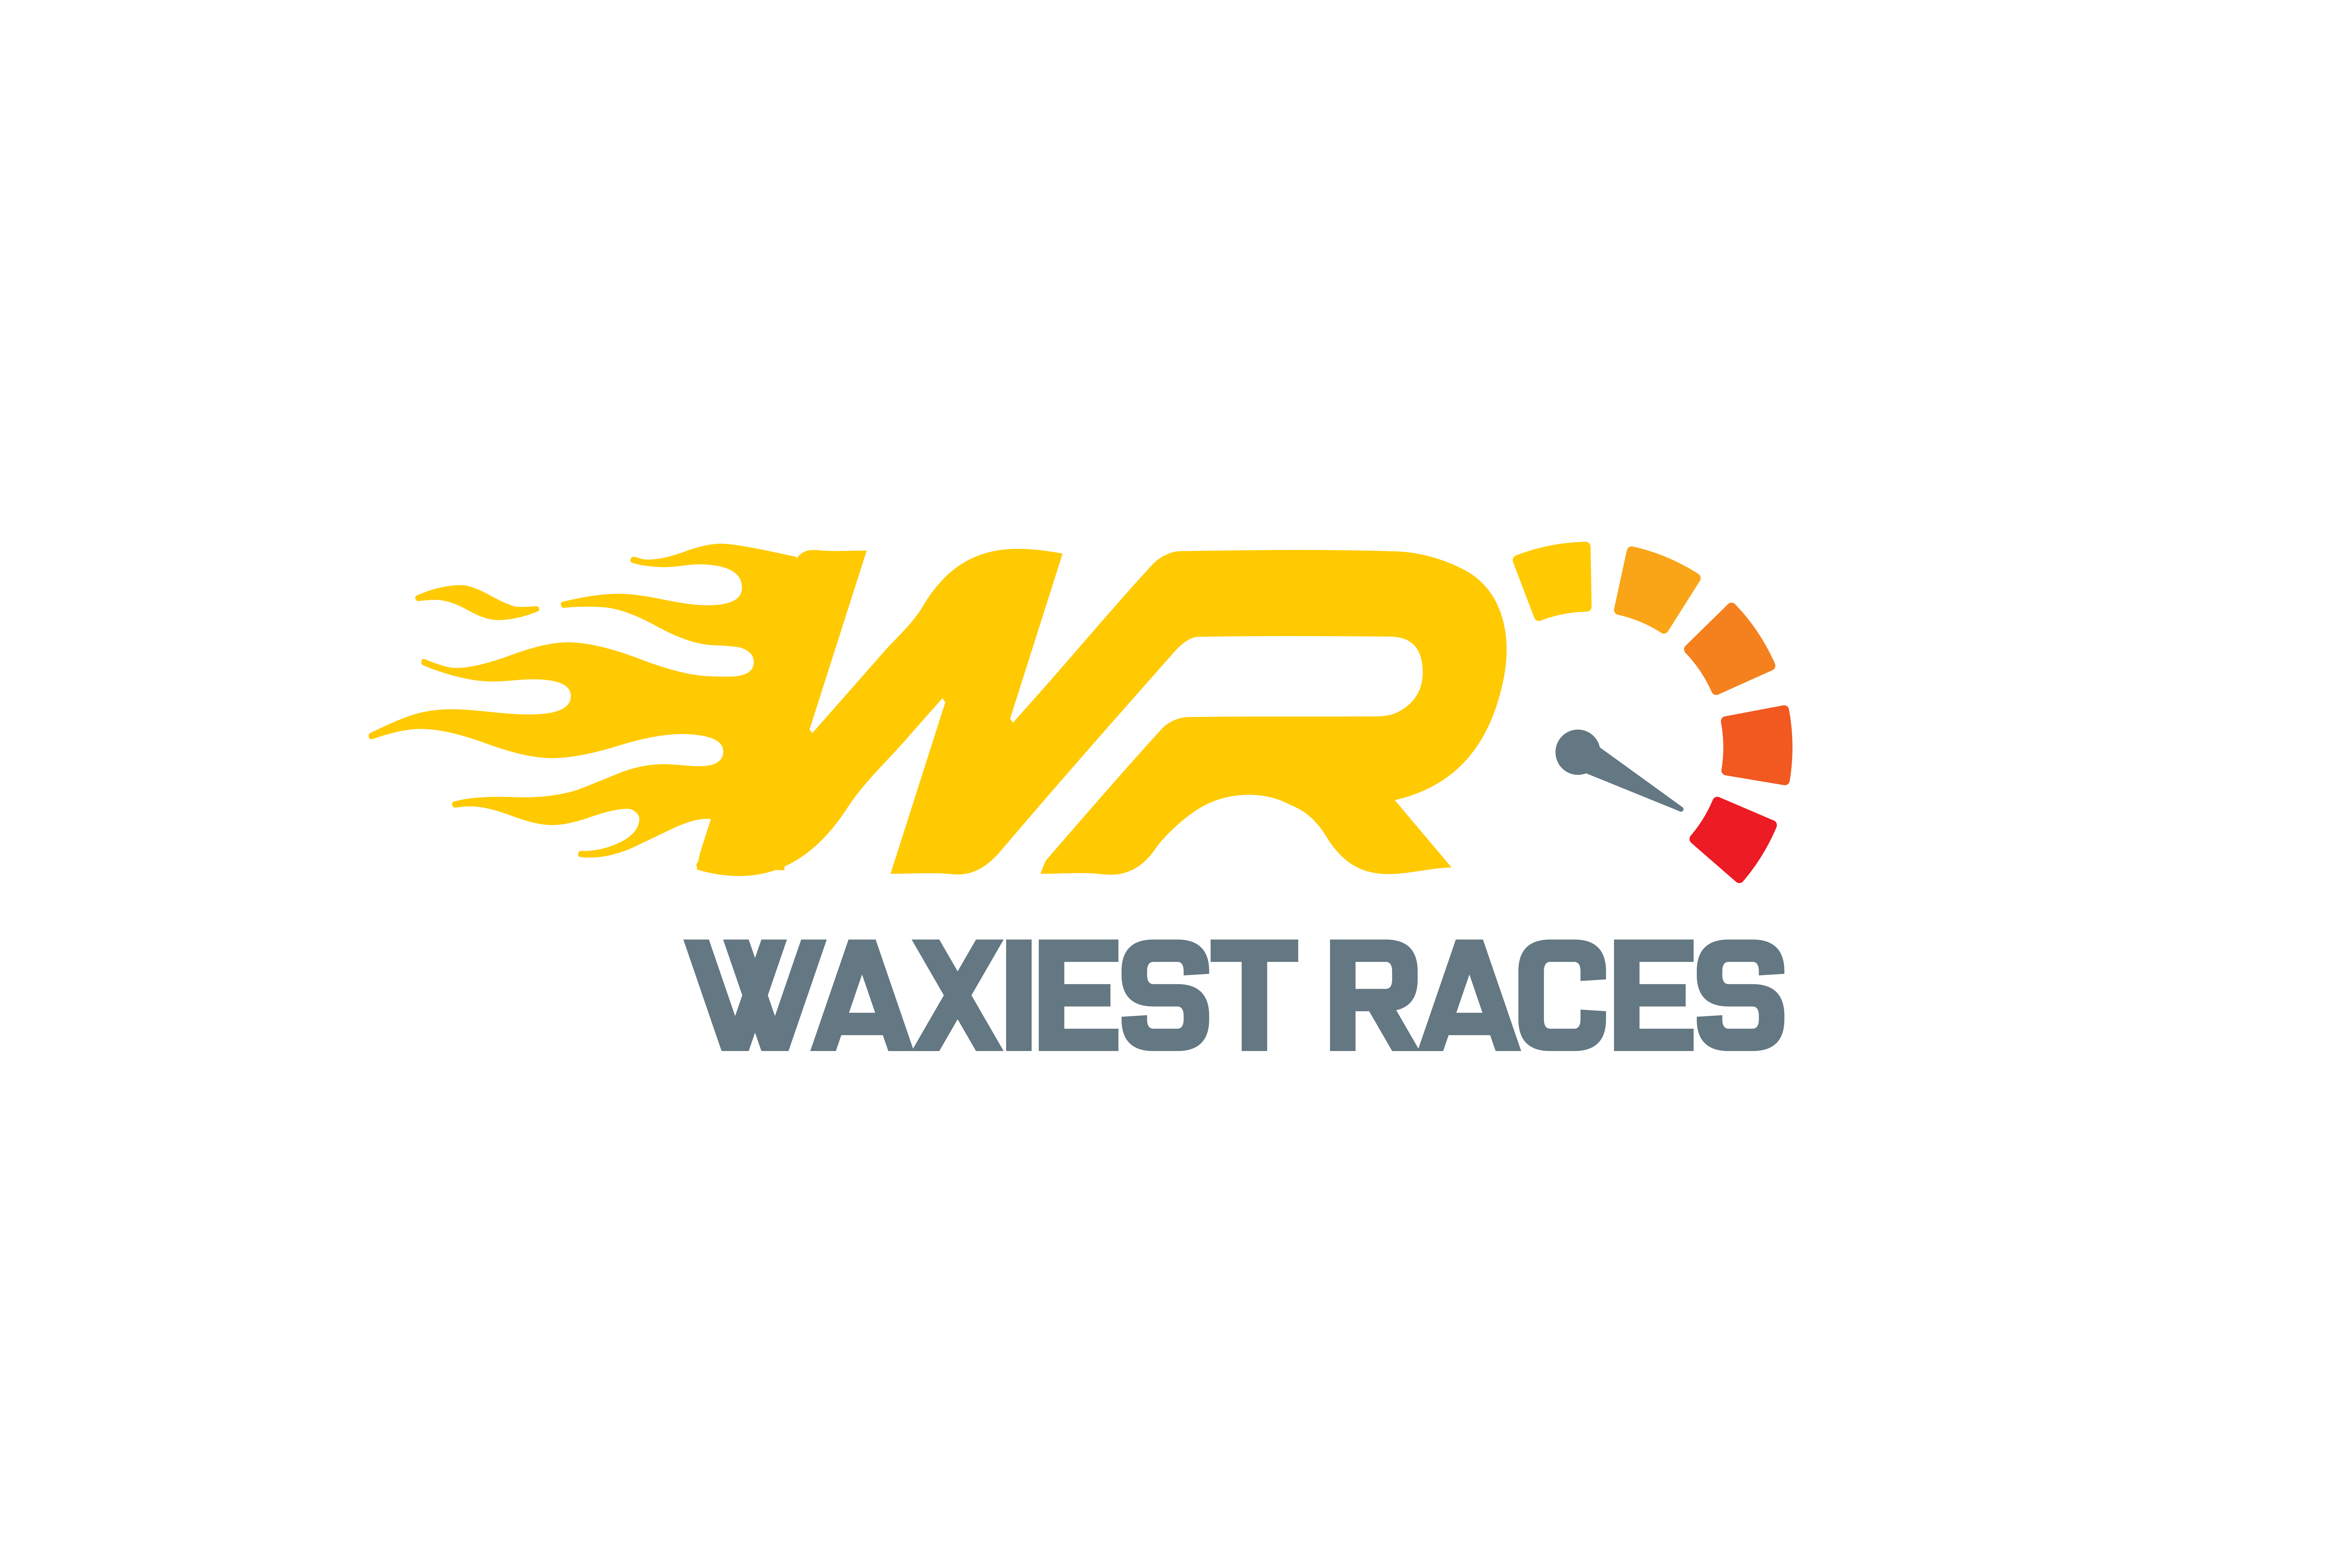 WAXiest Races